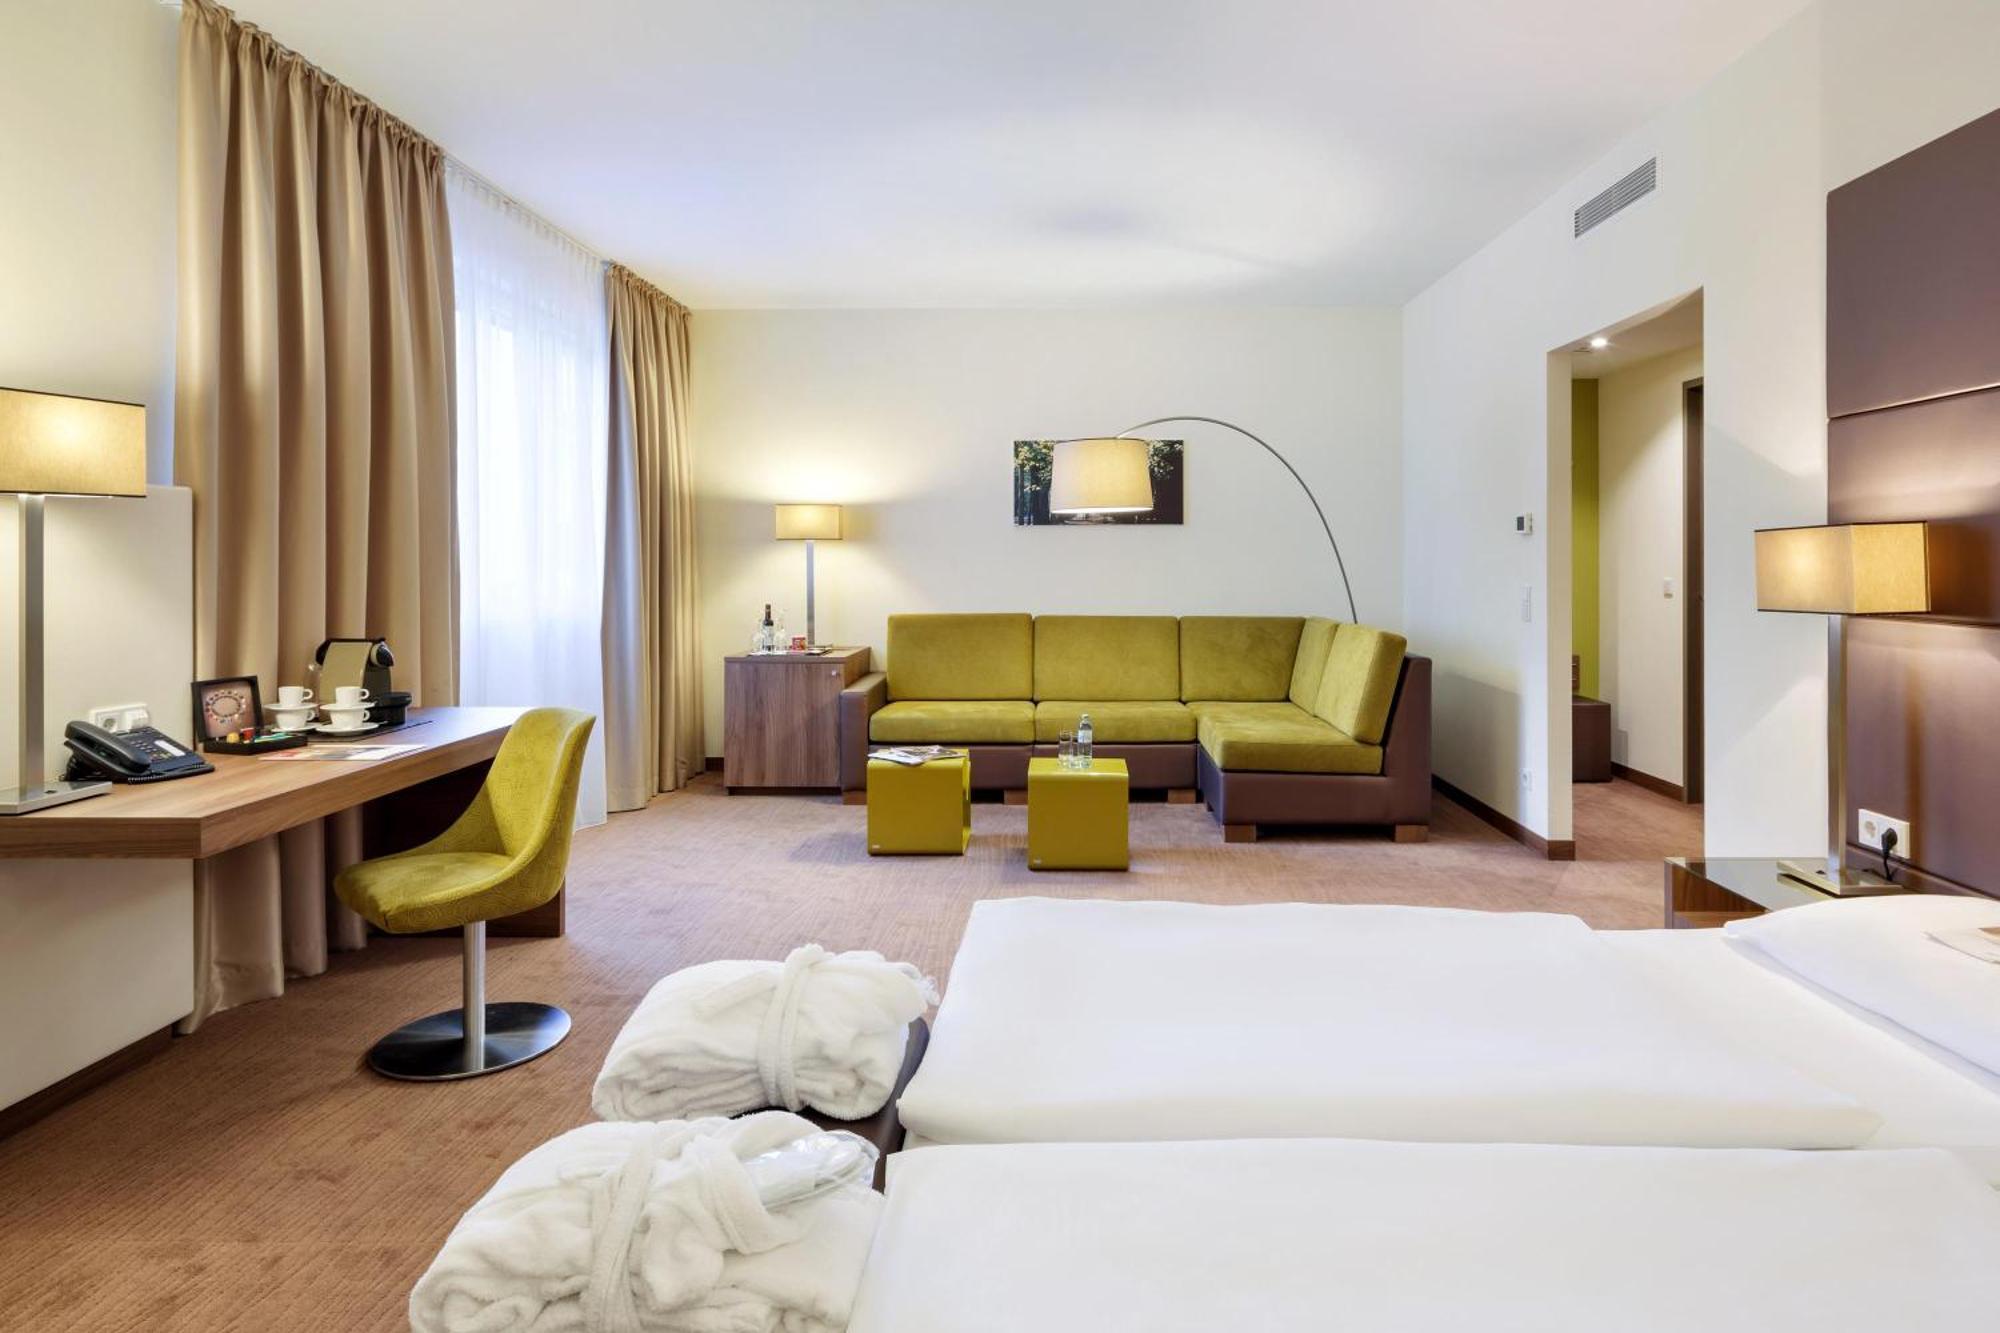 Austria Trend Hotel Doppio Wien מראה חיצוני תמונה